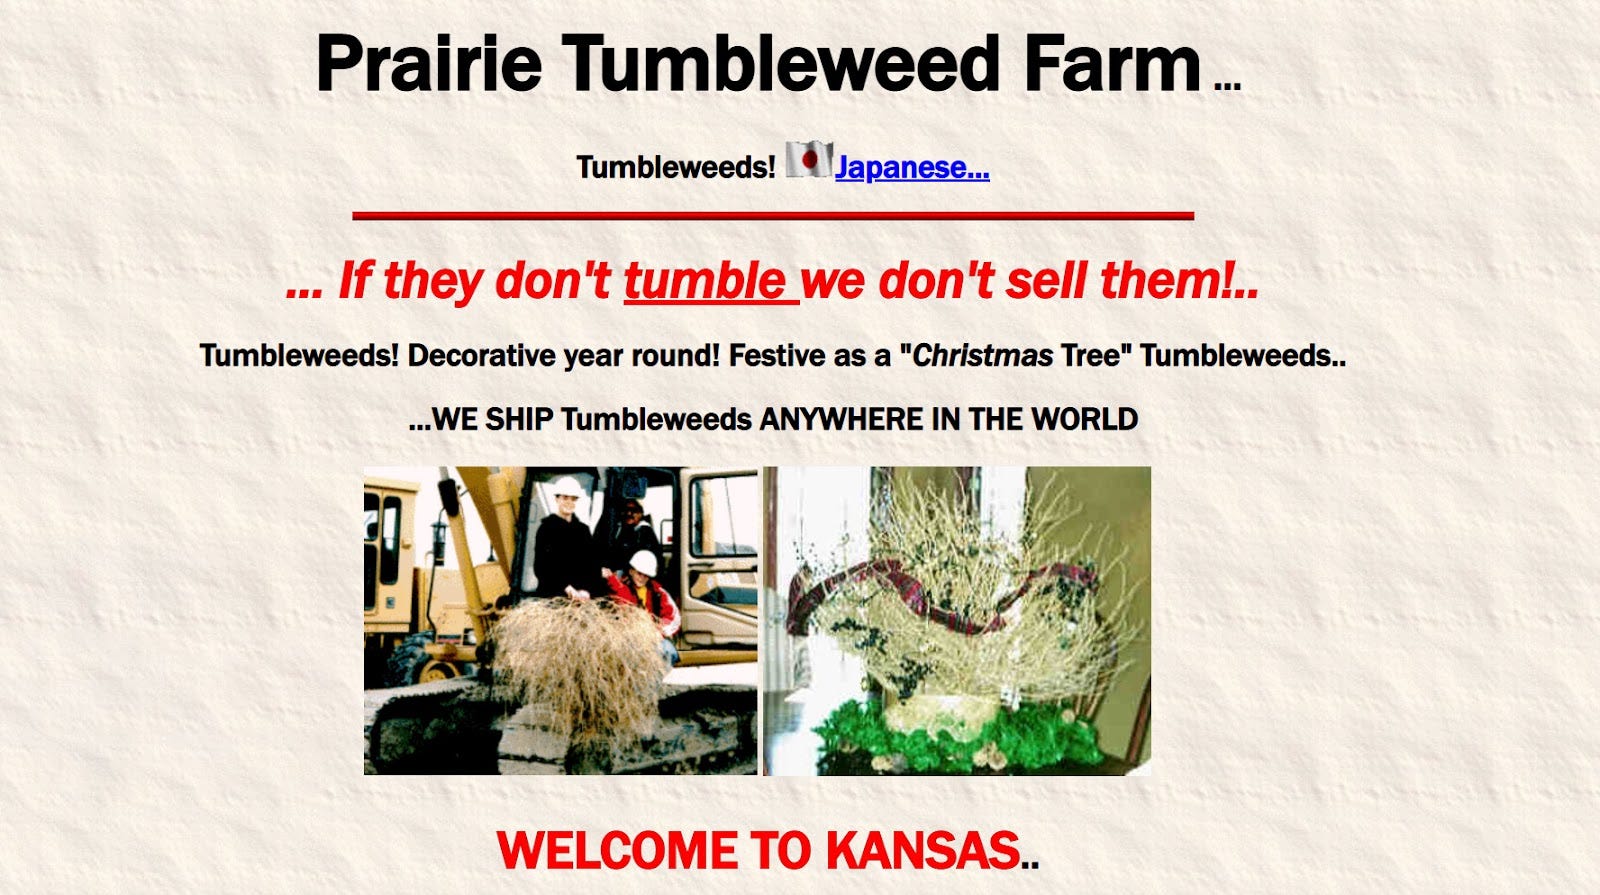 Tumbleweeds for Sale, Buy Tumbleweeds, Purchase Tumbleweed